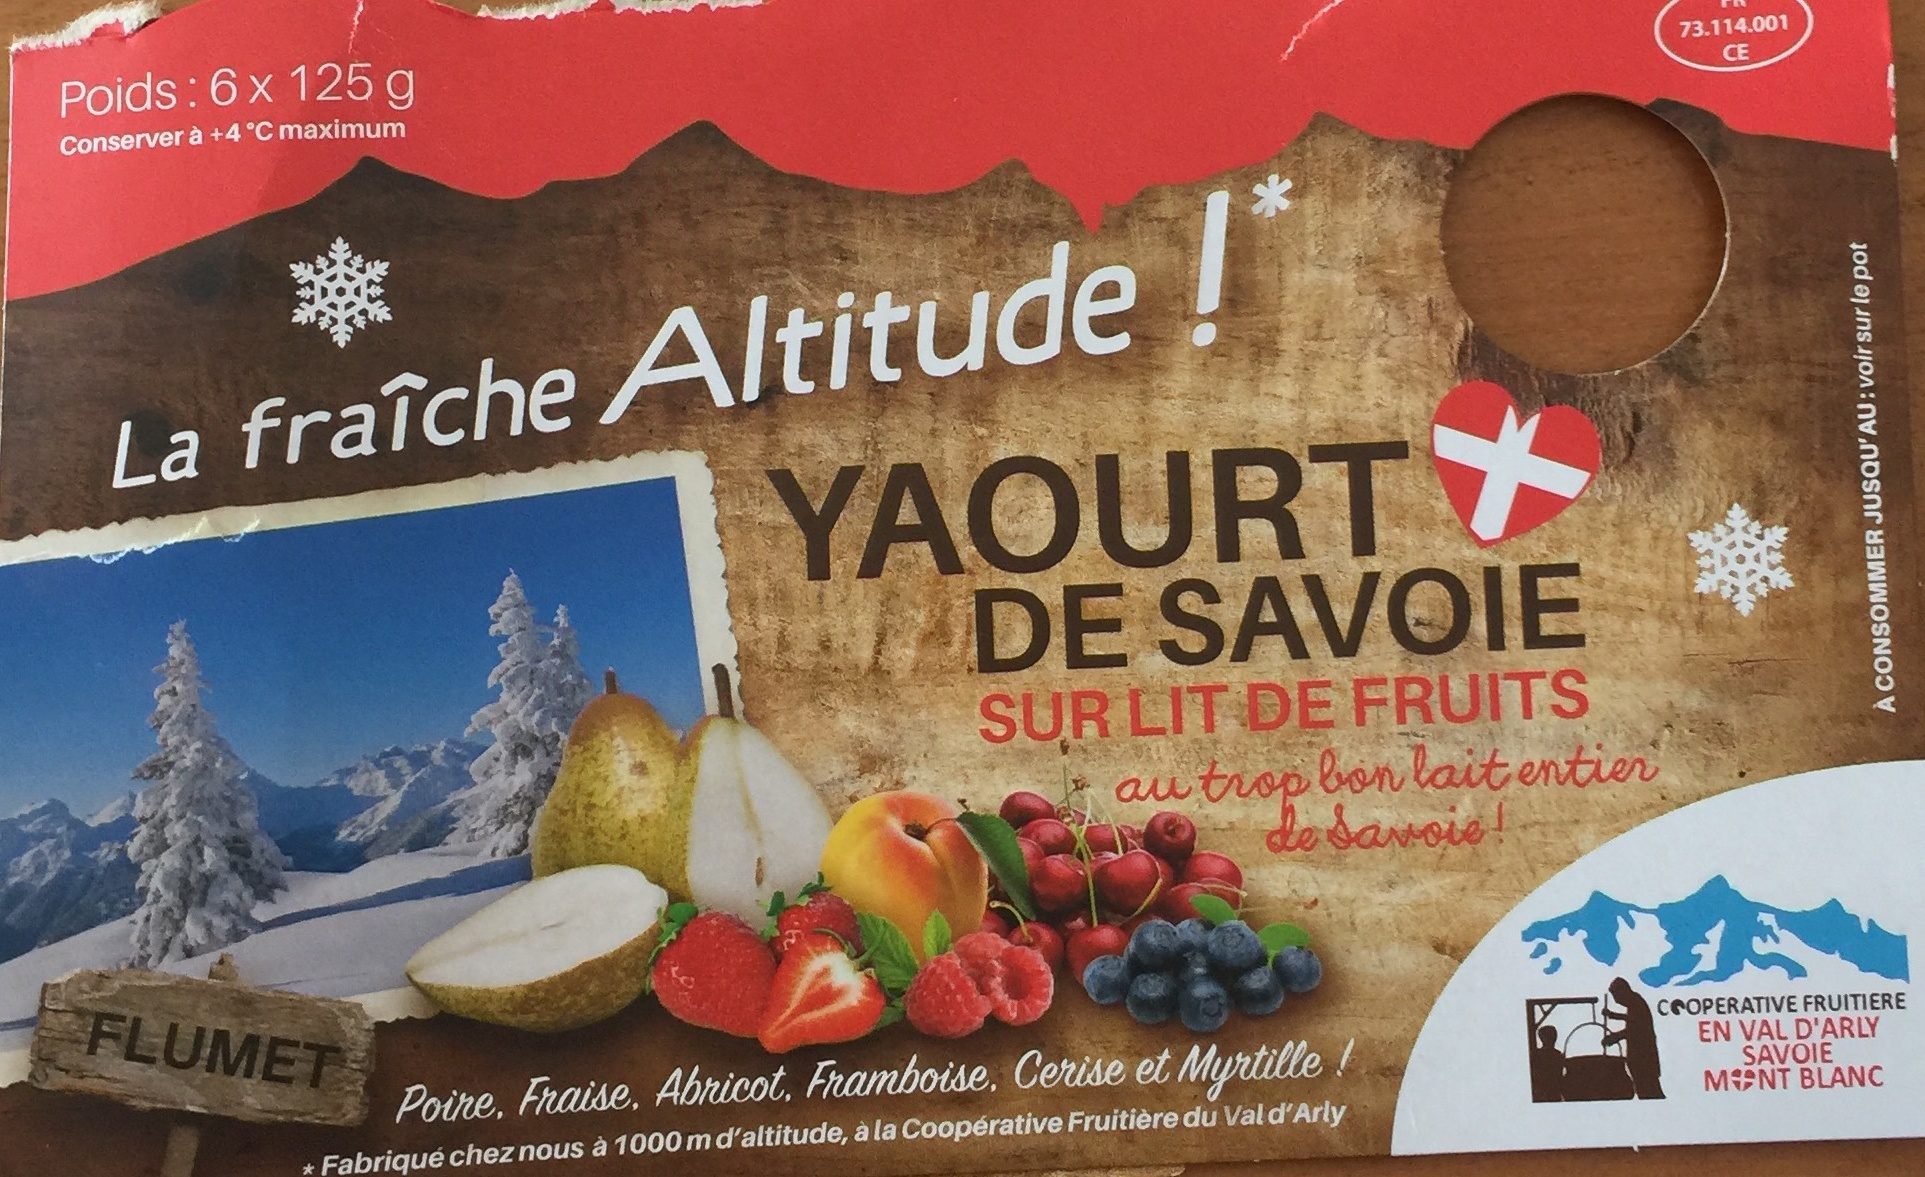 Yaourt de Savoie sur lit de fruits - Product - fr